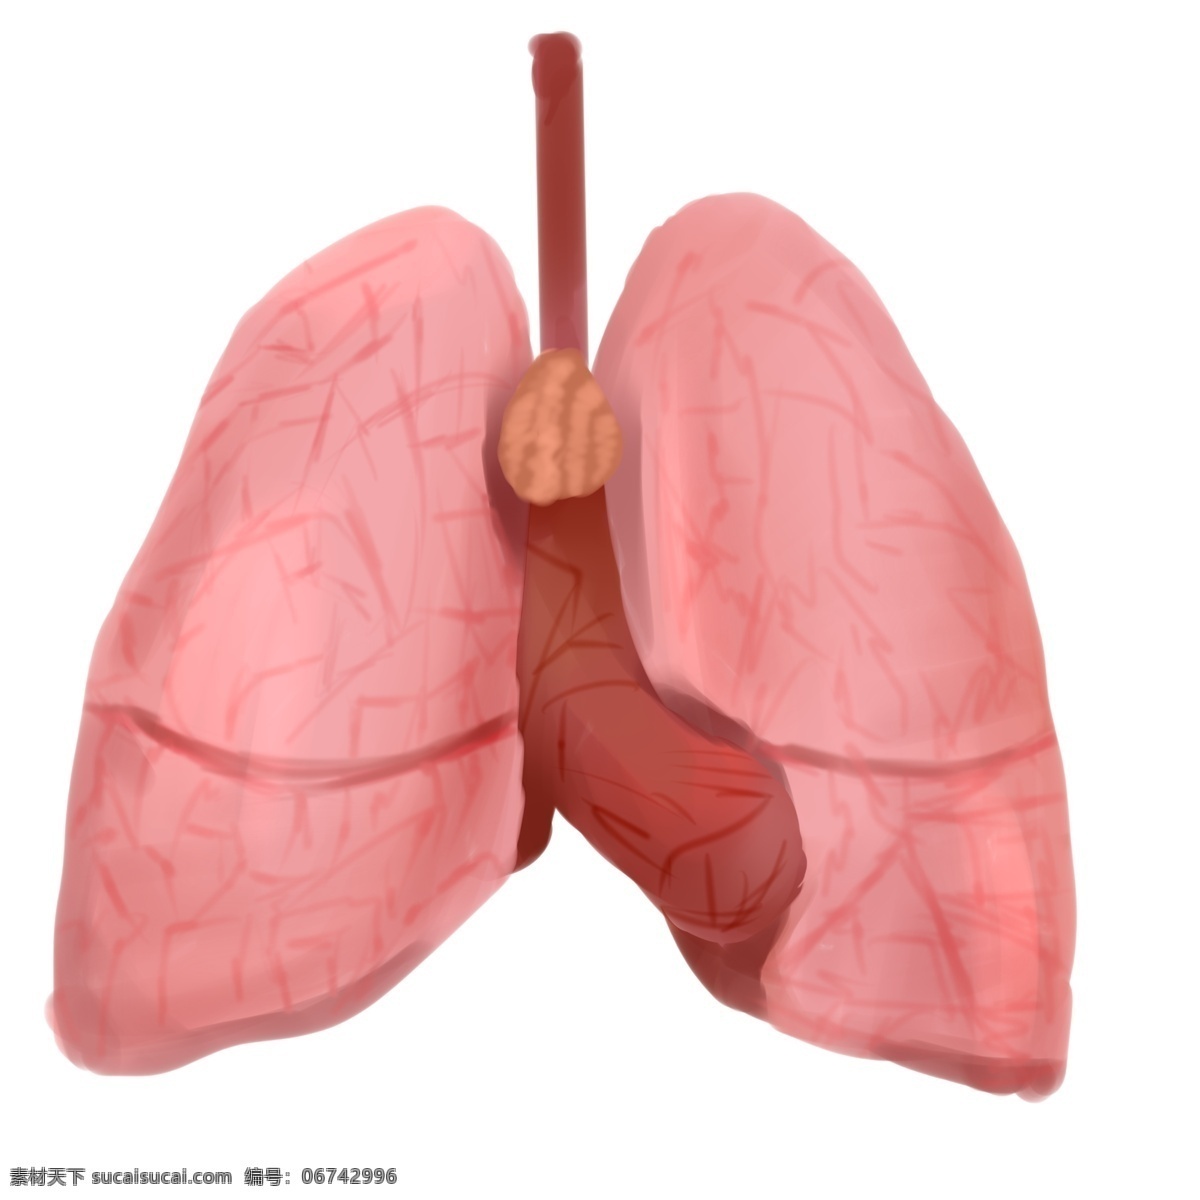 人体 器官 肺脏 插画 红色的肺脏 卡通插画 人体器官 身体器官 人体脏器 运作器官 人体的肺脏